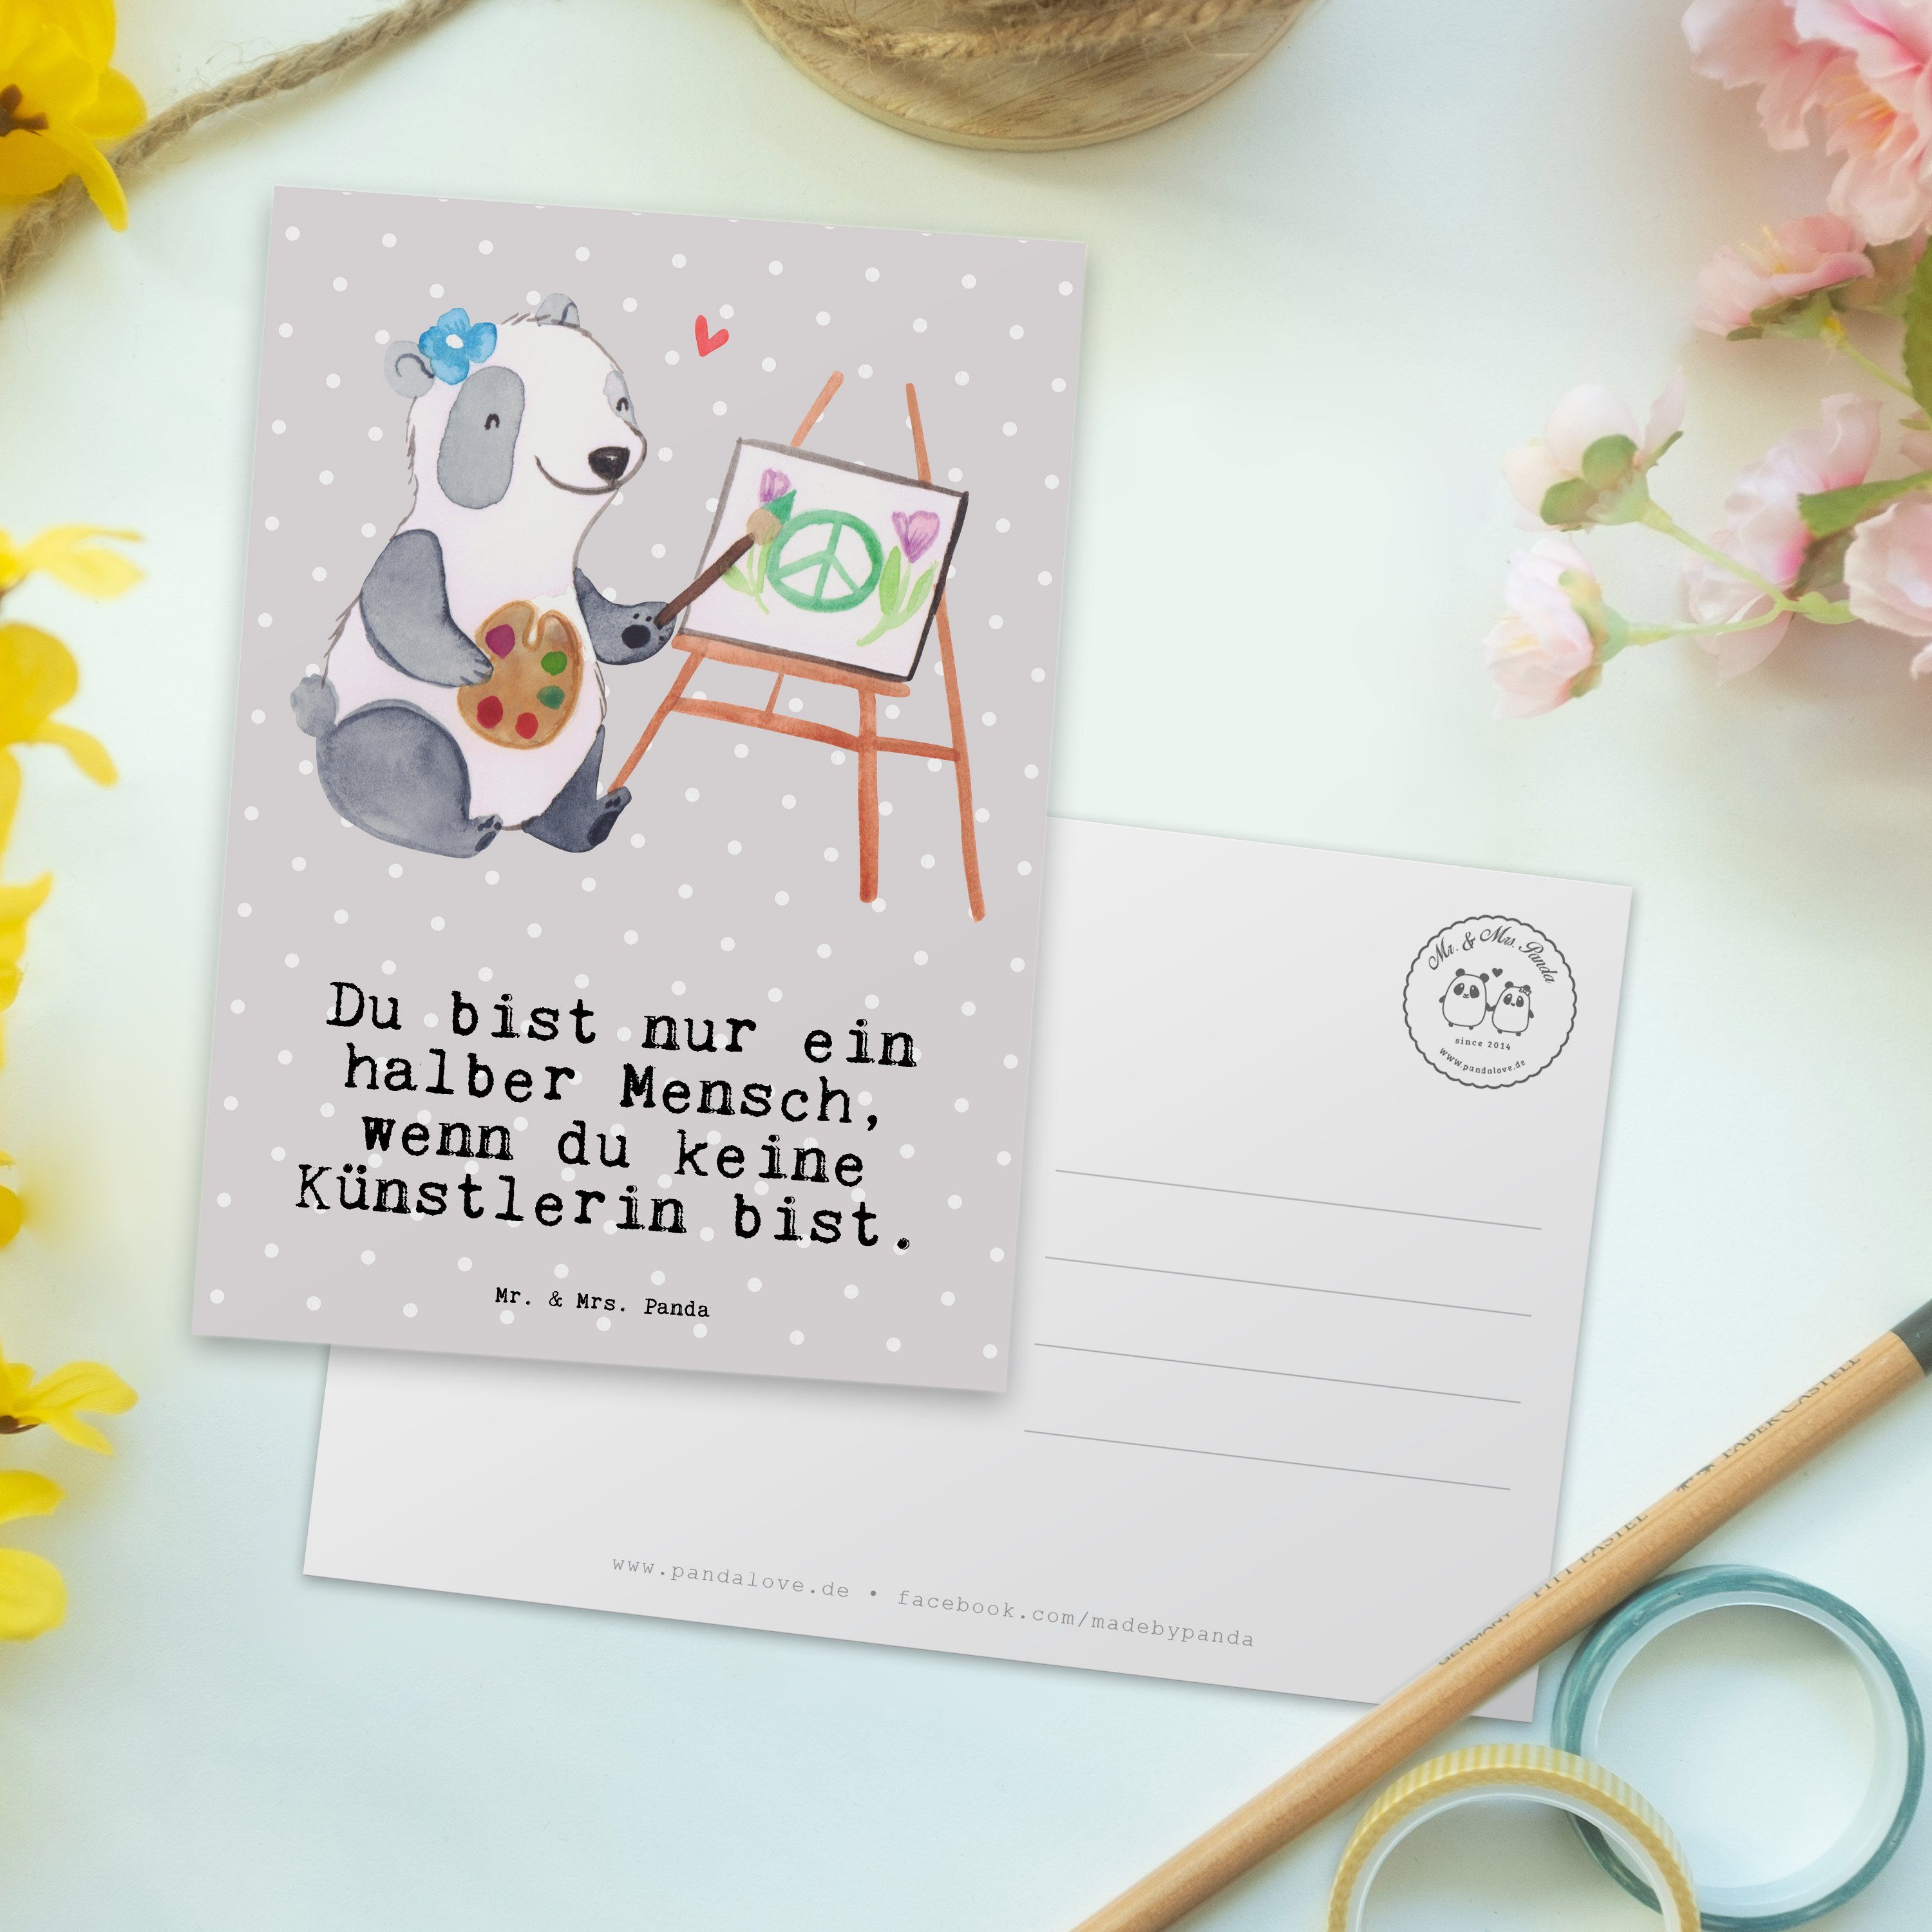 Mr. & Mrs. Panda Postkarte Dankeschön, - Künstlerin Pastell Geschenk, Herz Grau - mit Kunstmaler